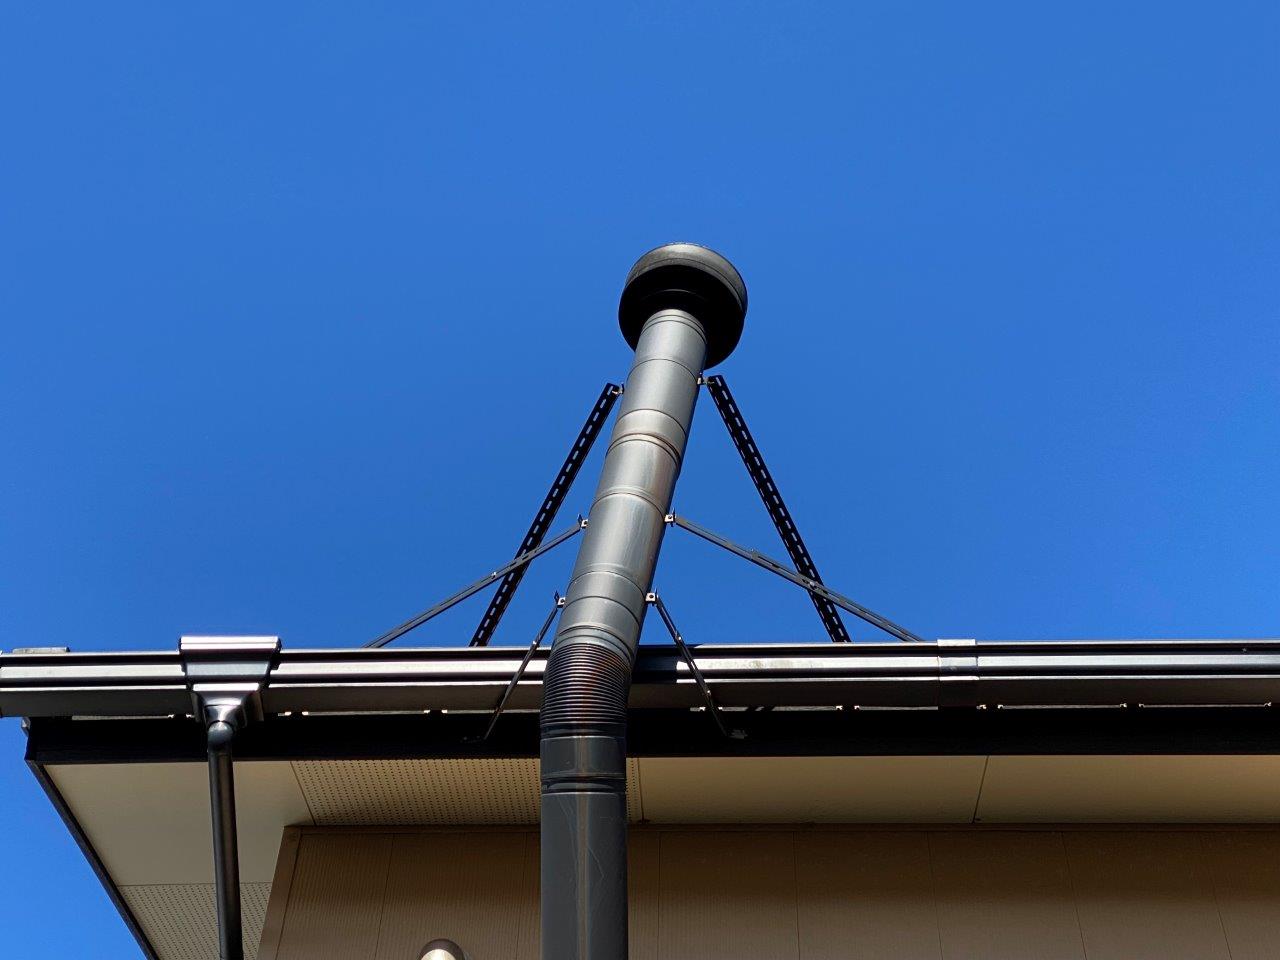 新潟市西蒲区にて薪ストーブの煙突が傾いているので見て欲しいとお問い合わせを頂きました